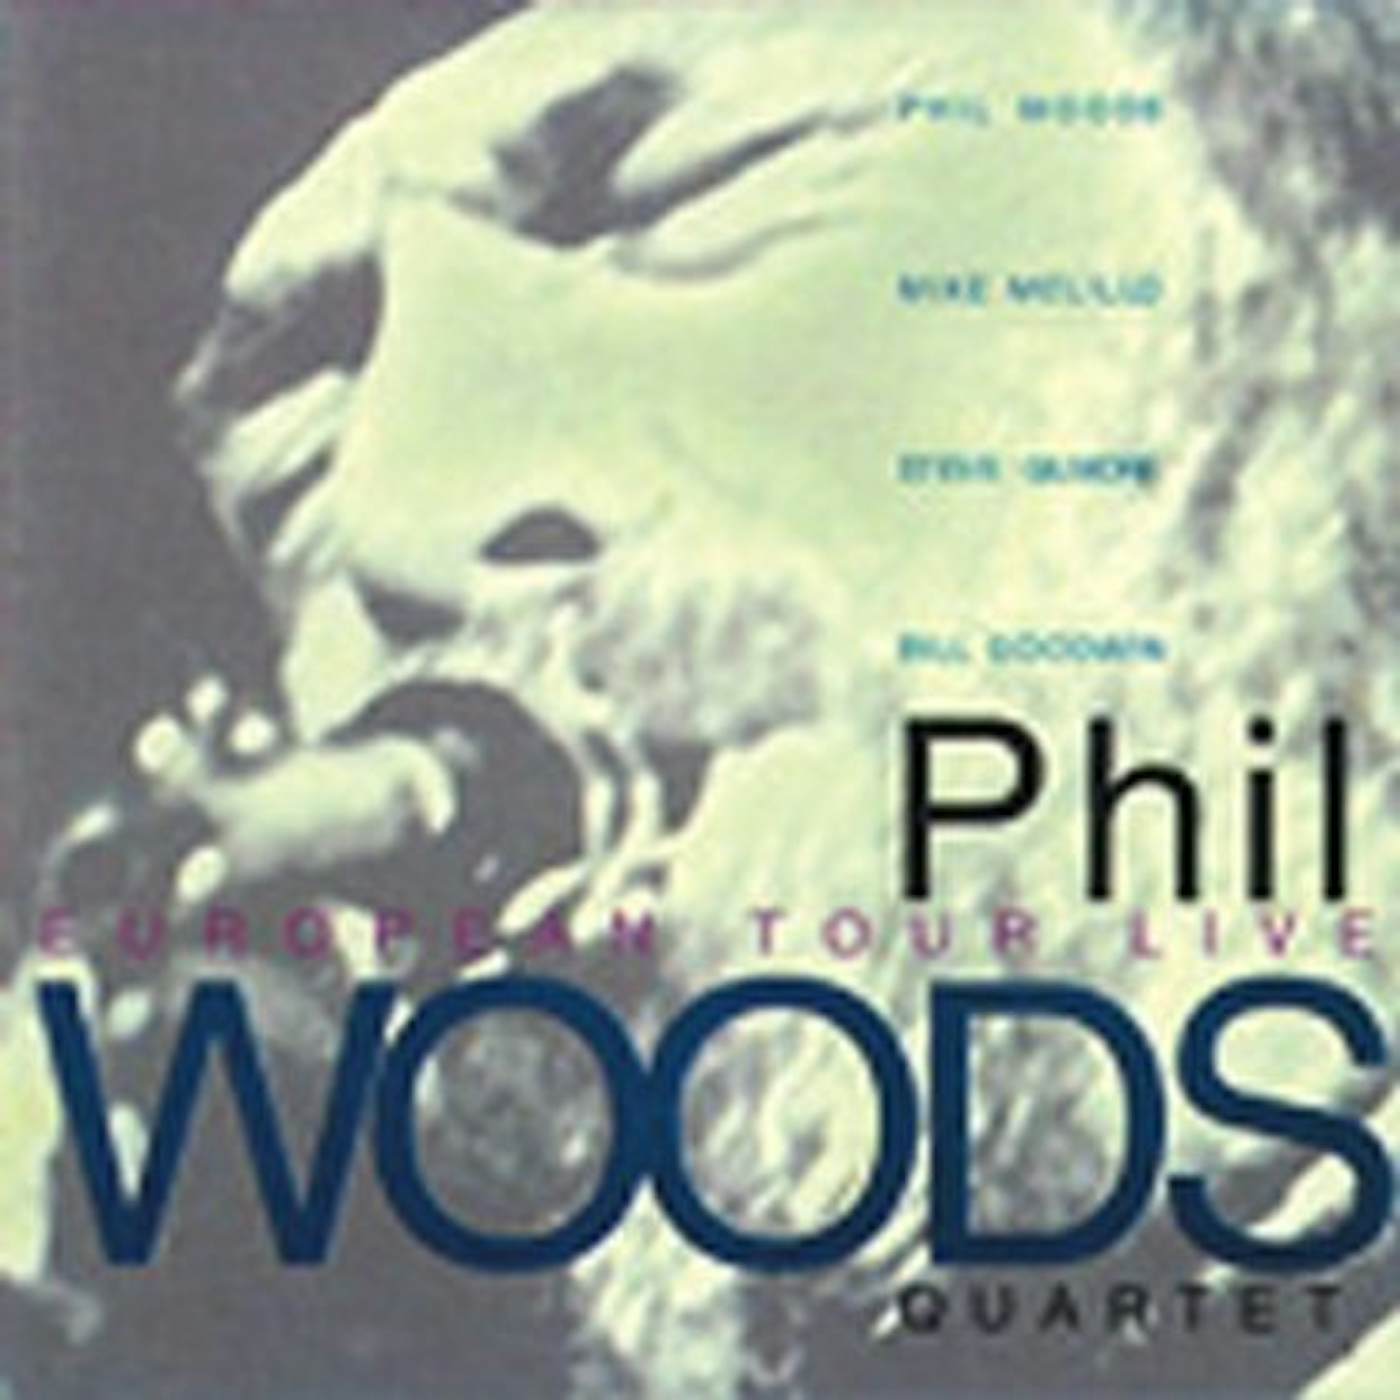 Phil Woods EUROPEAN TOUR LIVE CD